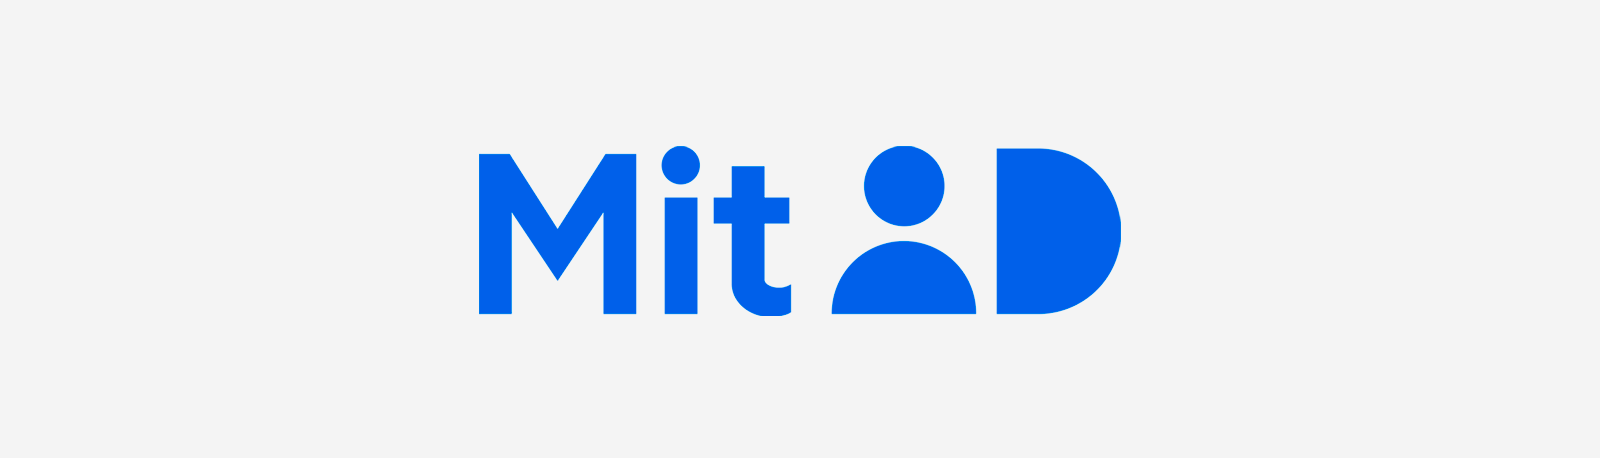 MitID logo blå